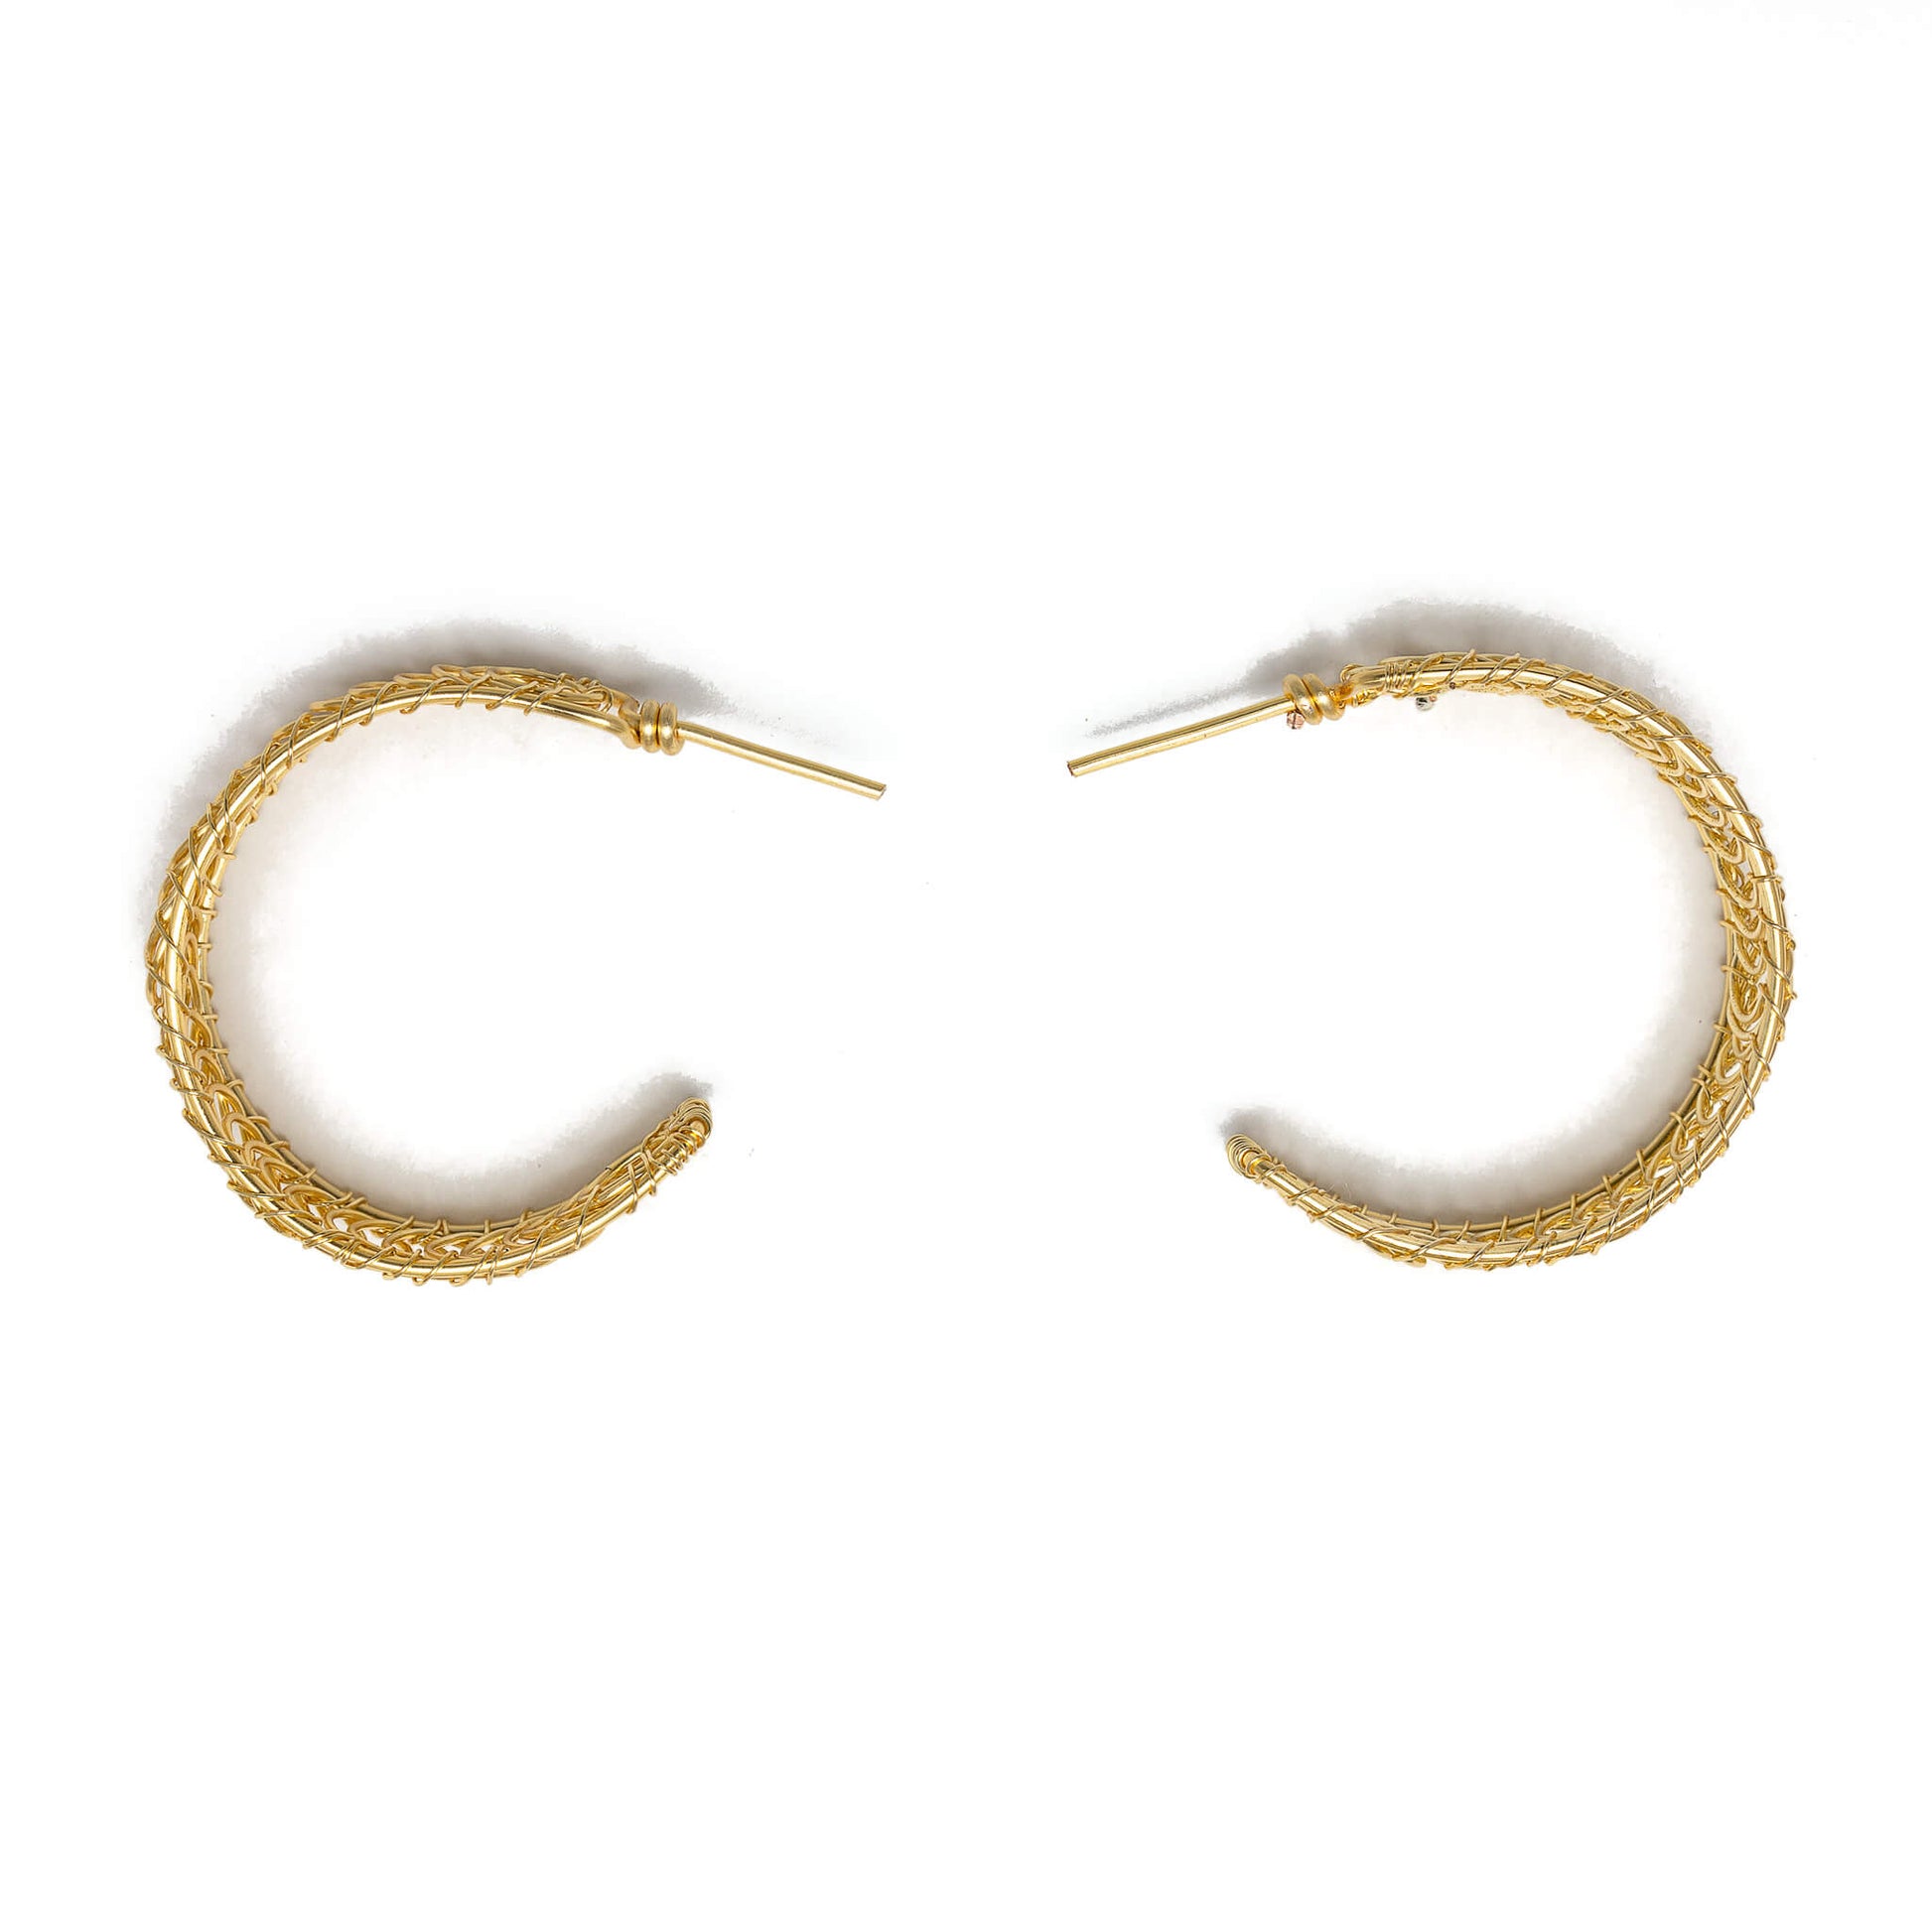 Prato Hoop Earrings.  Wire Wrapped Earrings. (Side View)